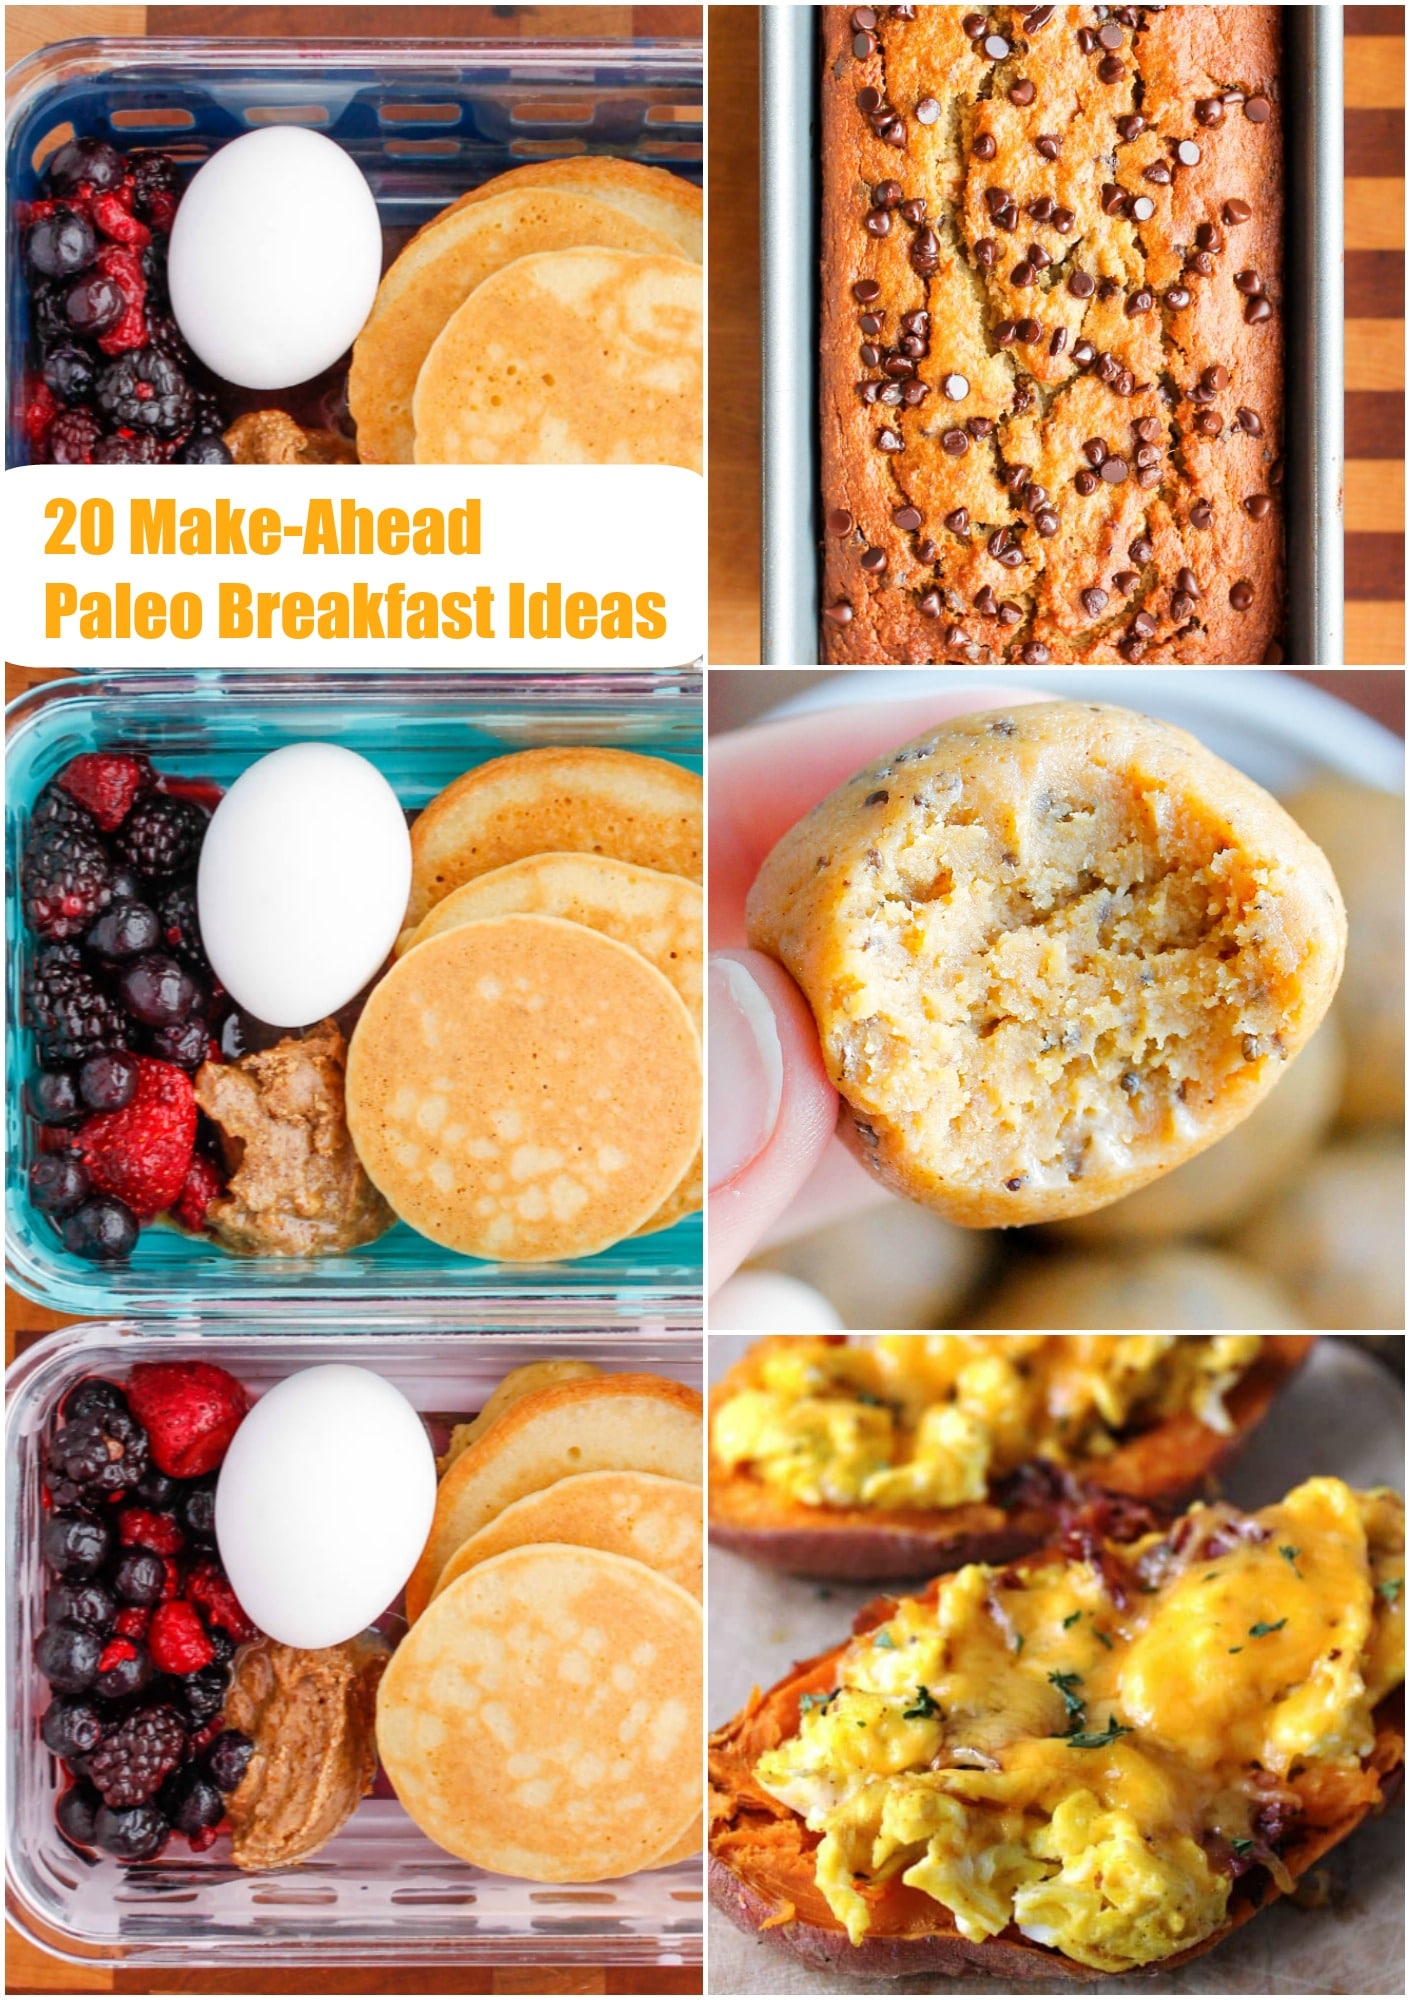 20 Make-Ahead Paleo Breakfast Ideas - Smile Sandwich